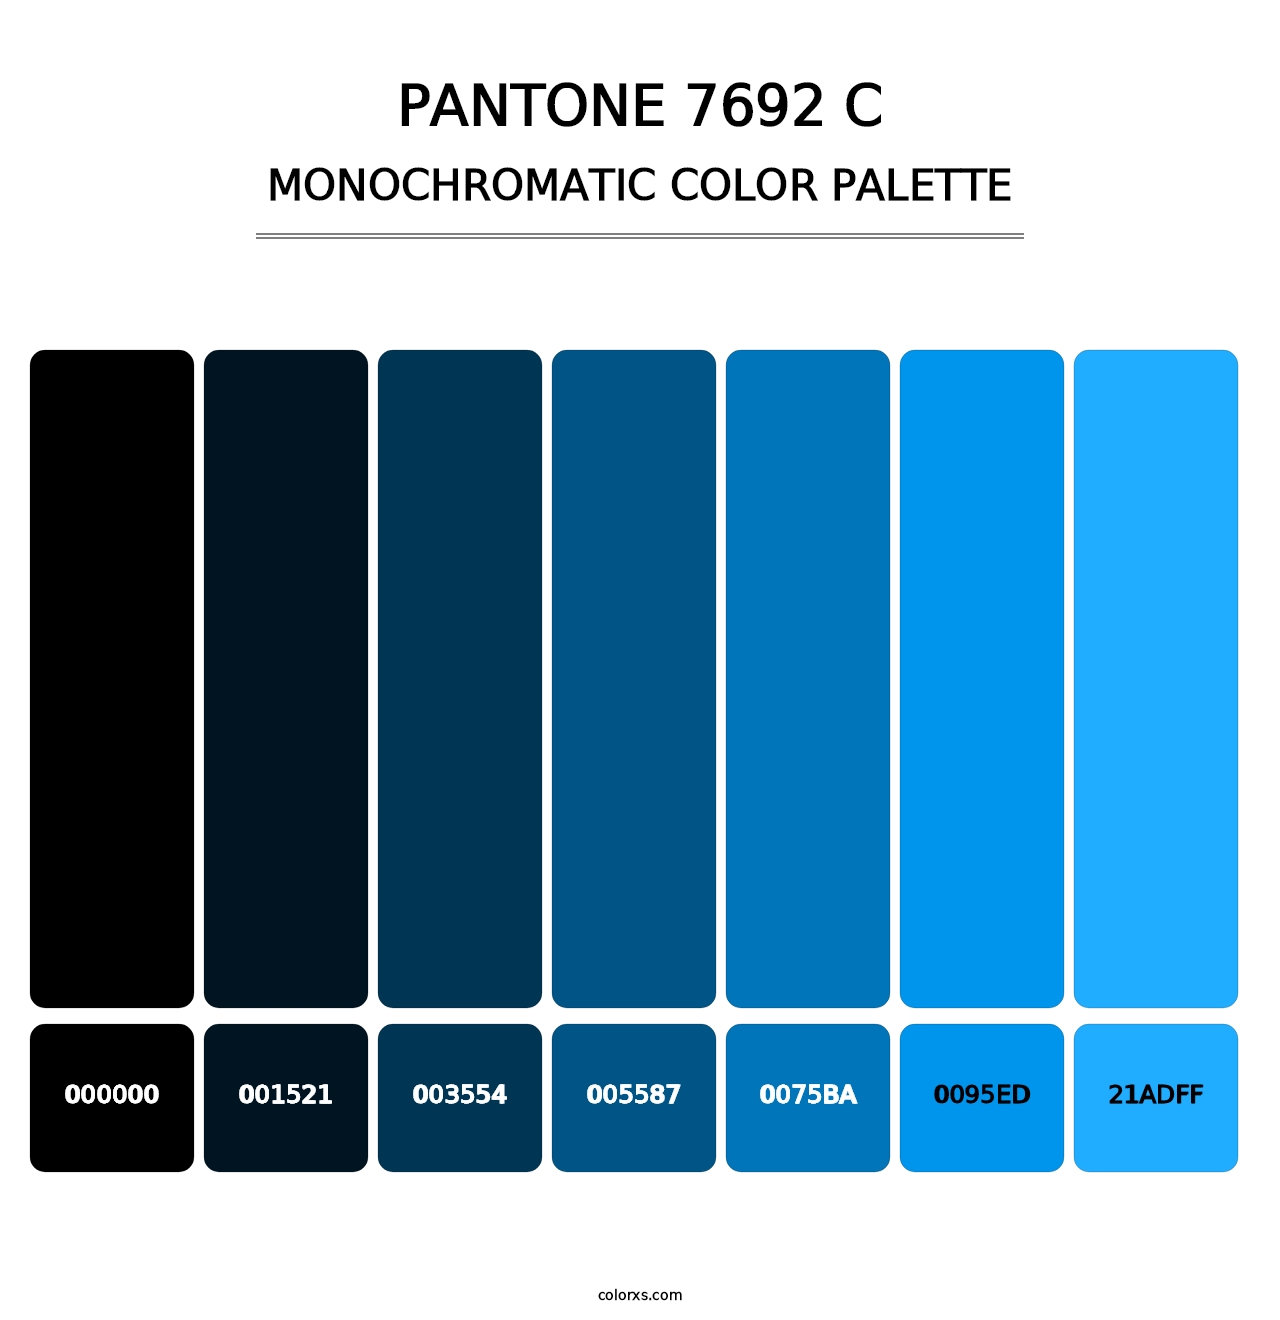 PANTONE 7692 C - Monochromatic Color Palette